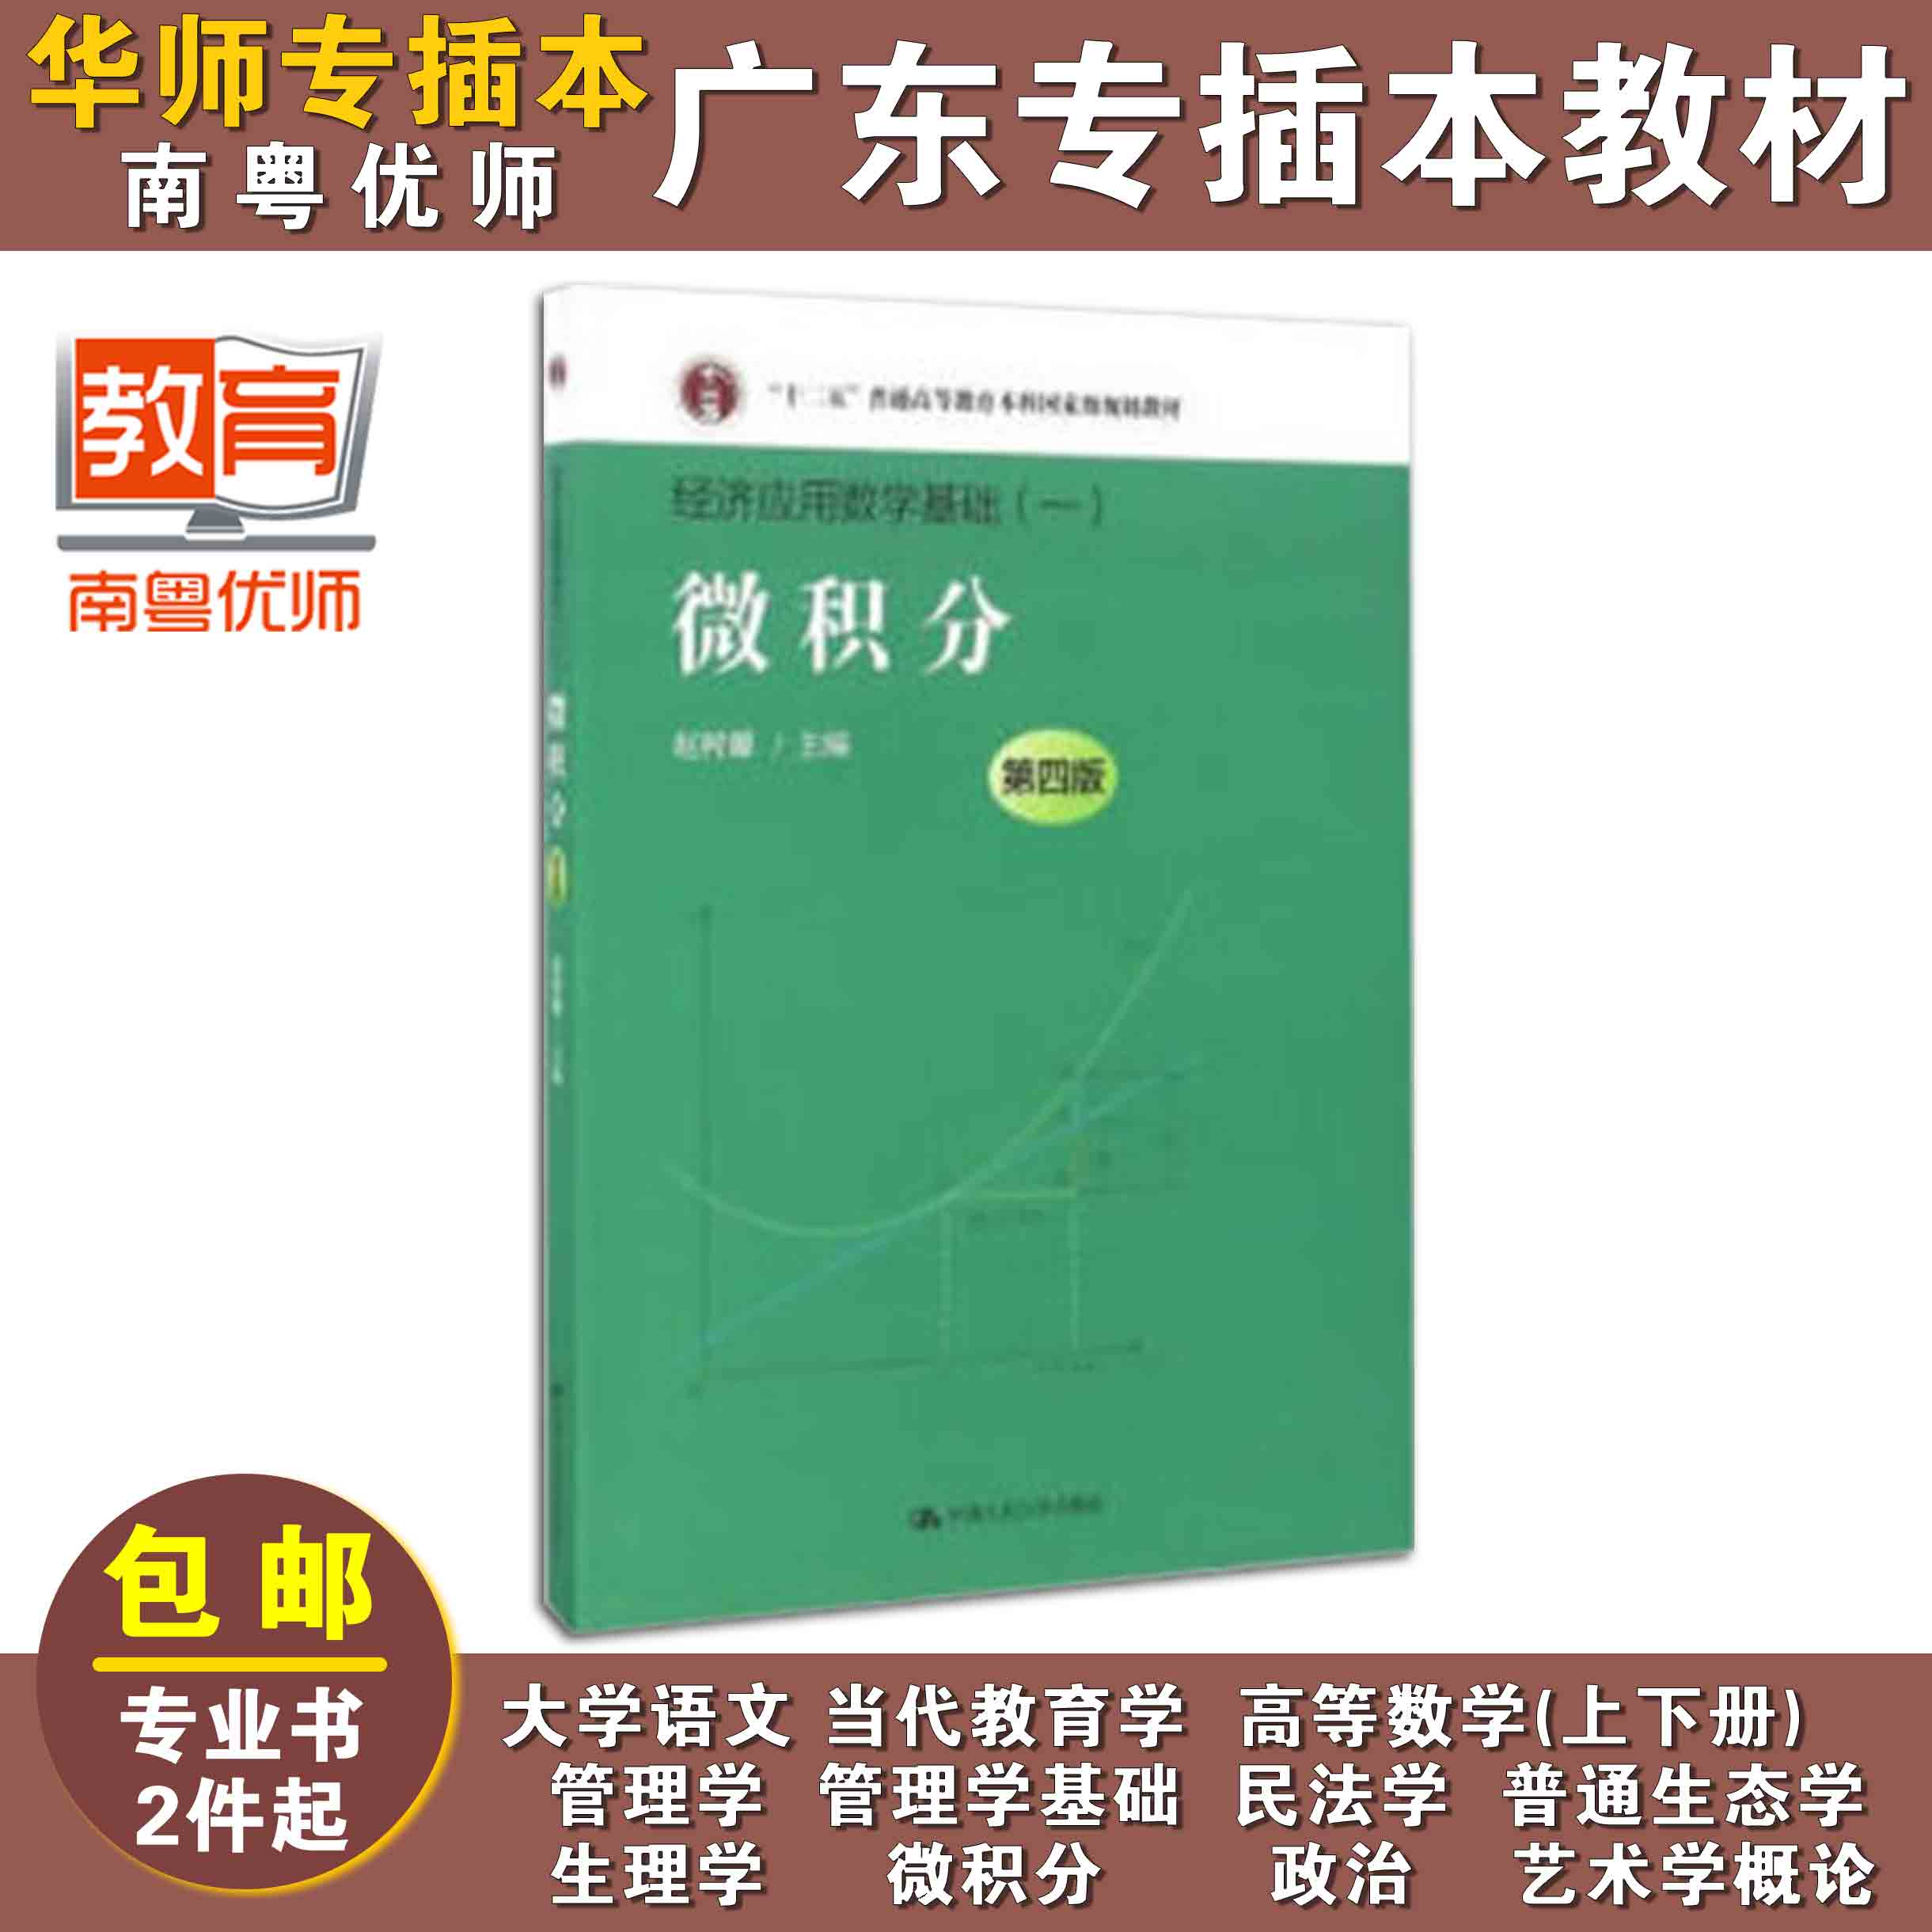 微积分(第四版),赵树嫄,中国人民大学出版社